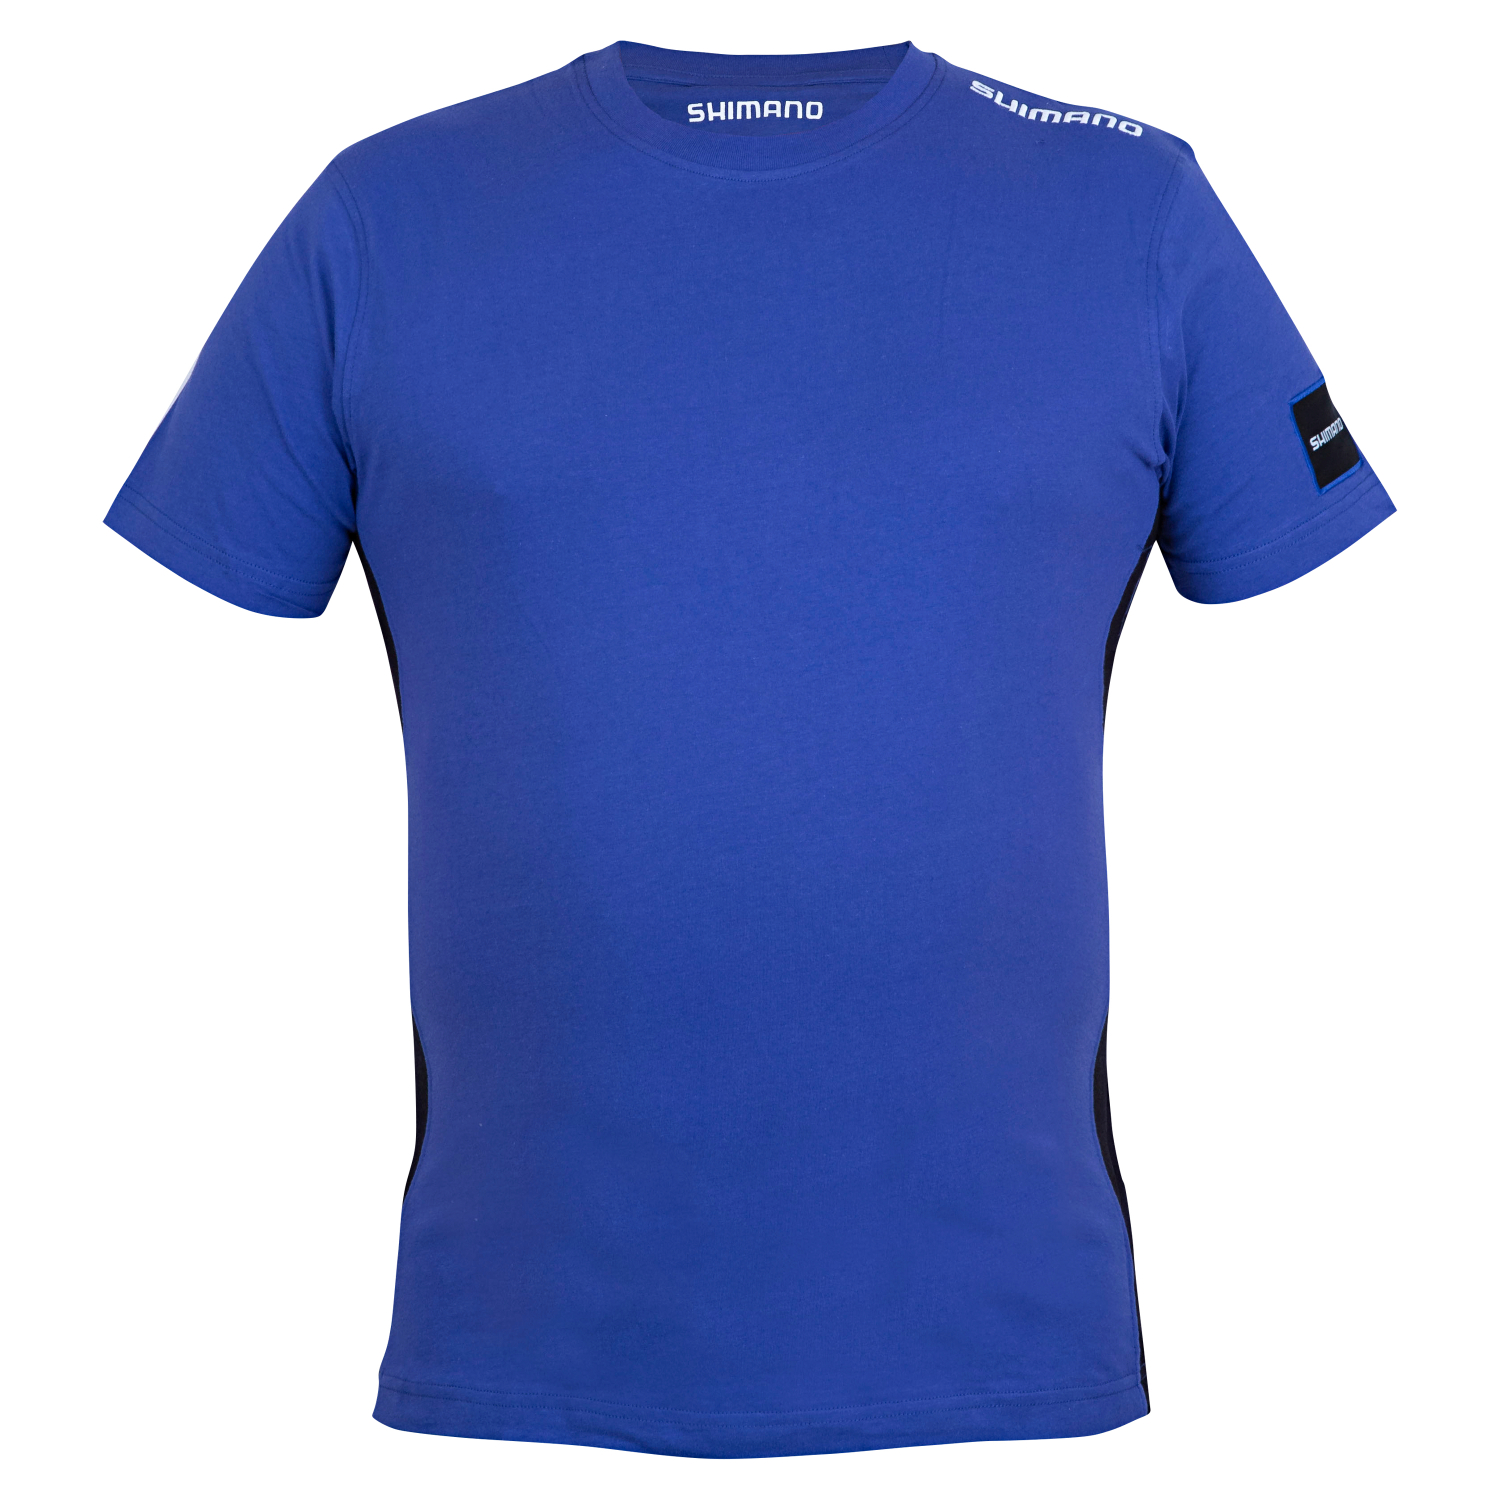 Shimano Herren T-Shirt (Royal Blue) 